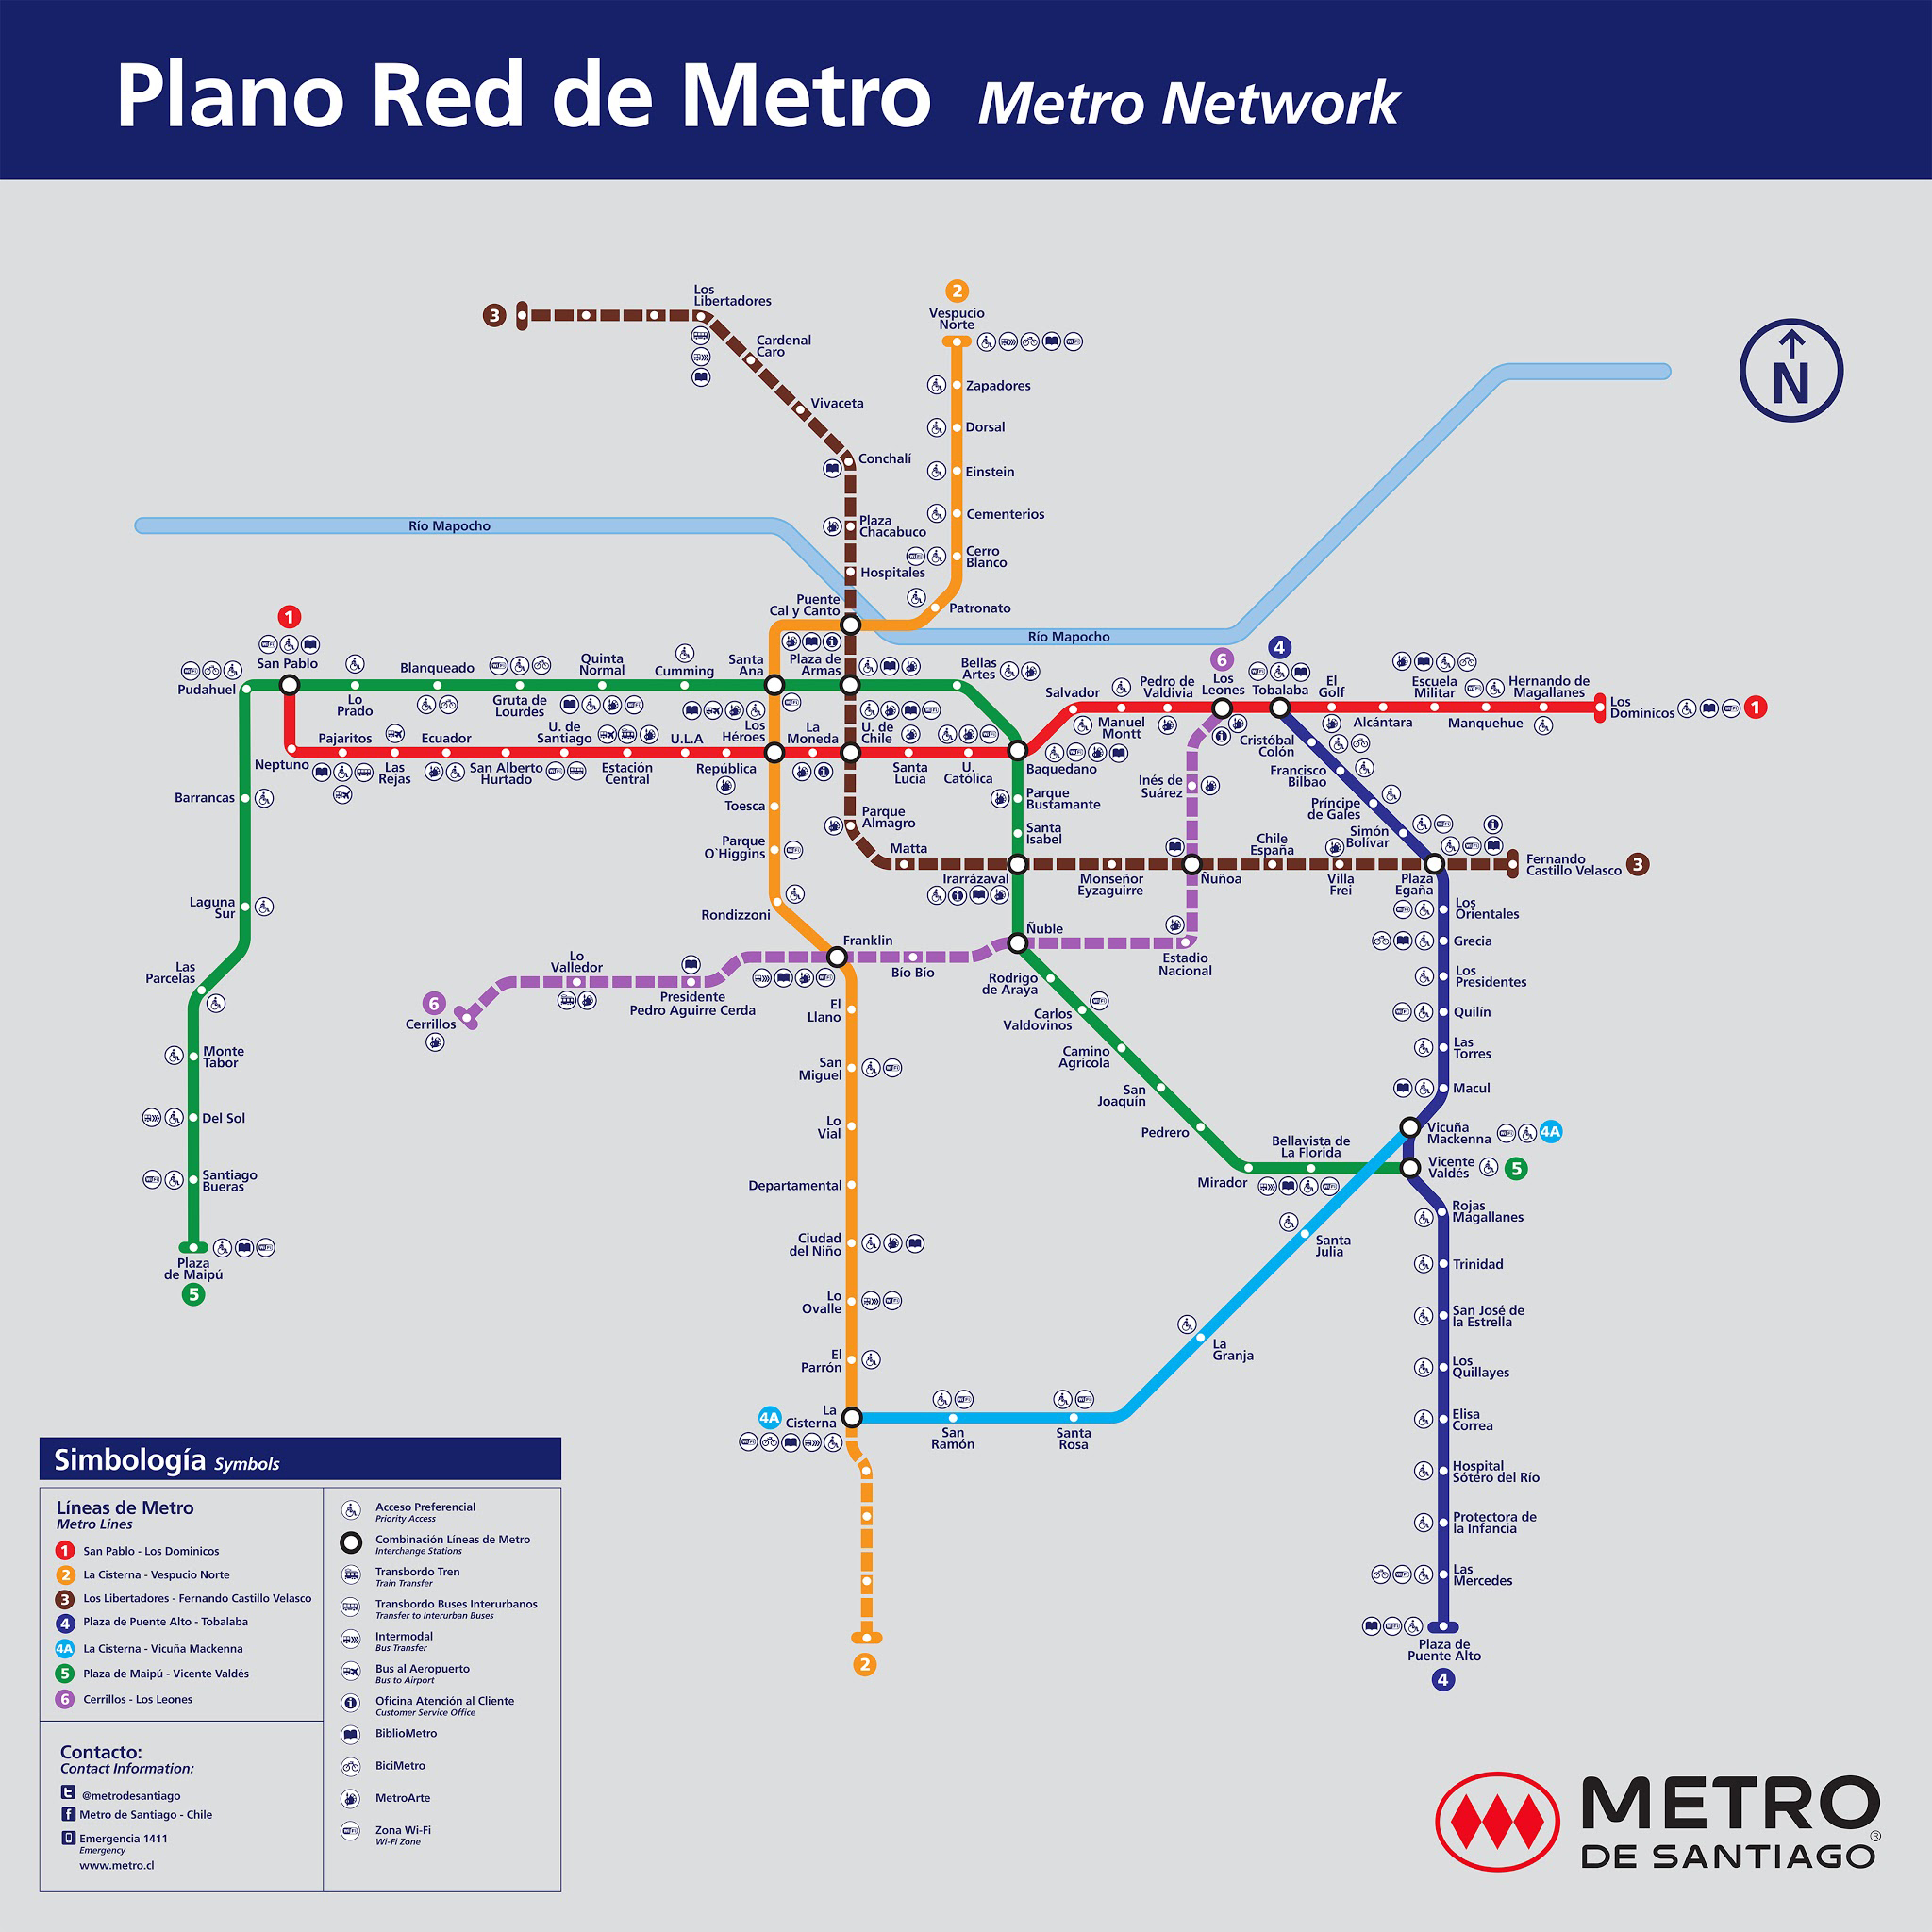 Mapa Metro de Santiago / Este es el plano con el mapa del Metro de Santiago